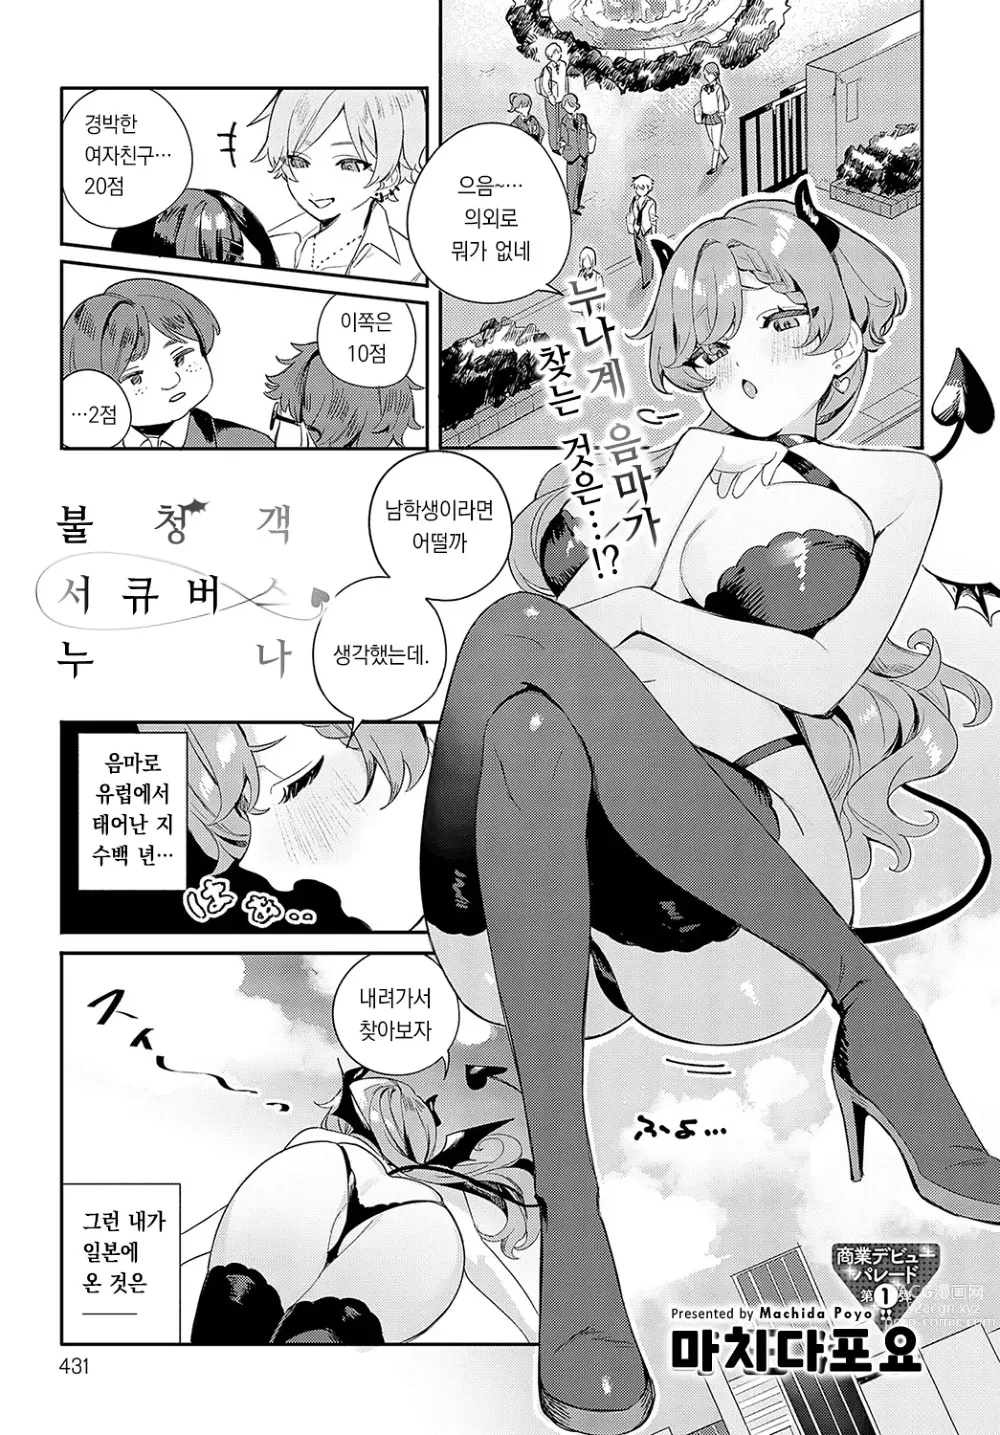 Page 2 of manga 불청객 서큐버스 누나